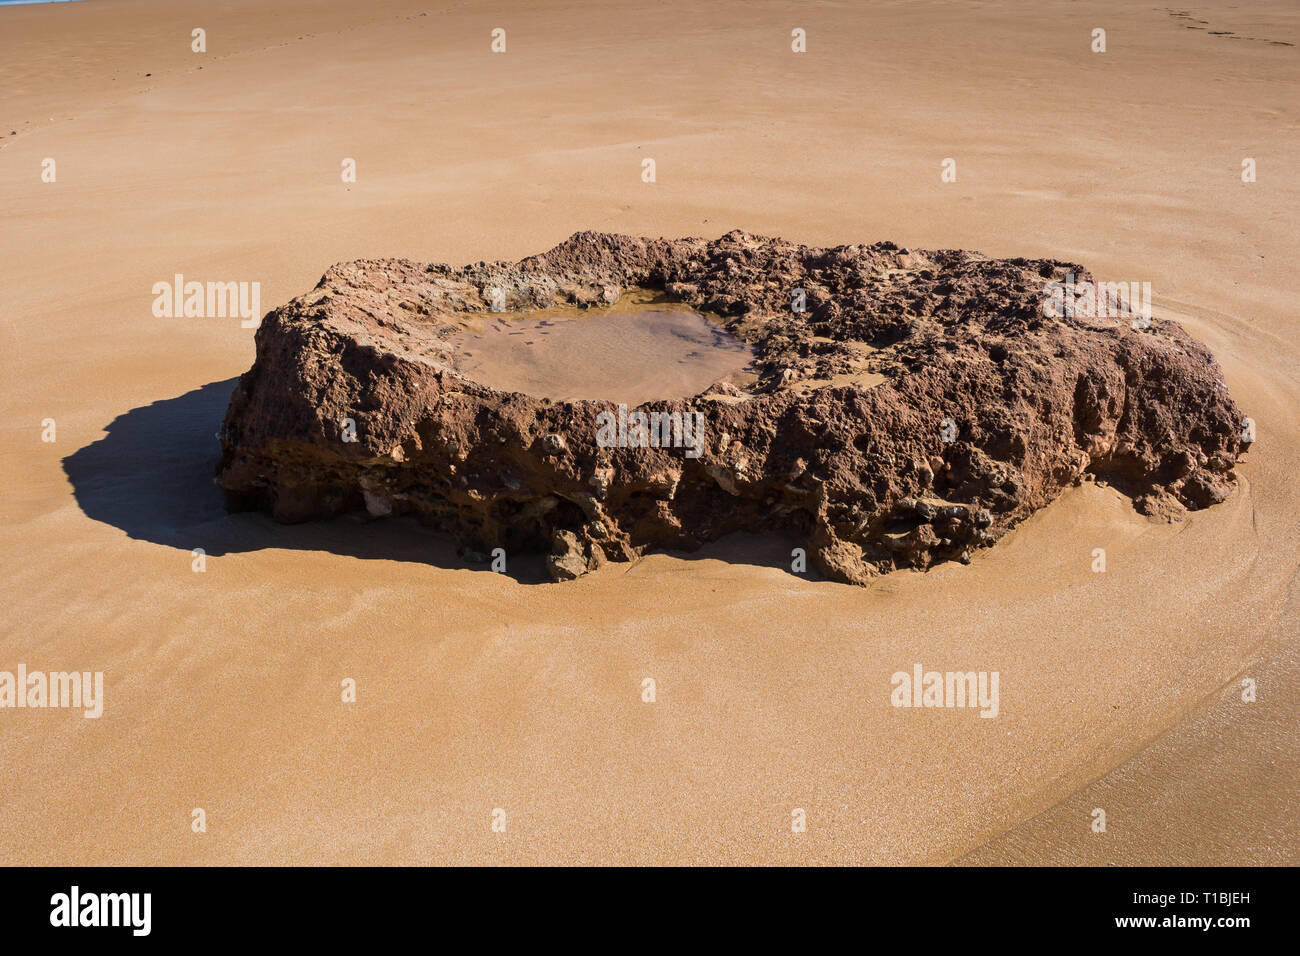 Plage de sable de l'océan Atlantique avec un rocher dans une forme d'un lavoratory, avec une flaque d'eau de mer à l'intérieur. Plage Beddouza, Maroc. Banque D'Images